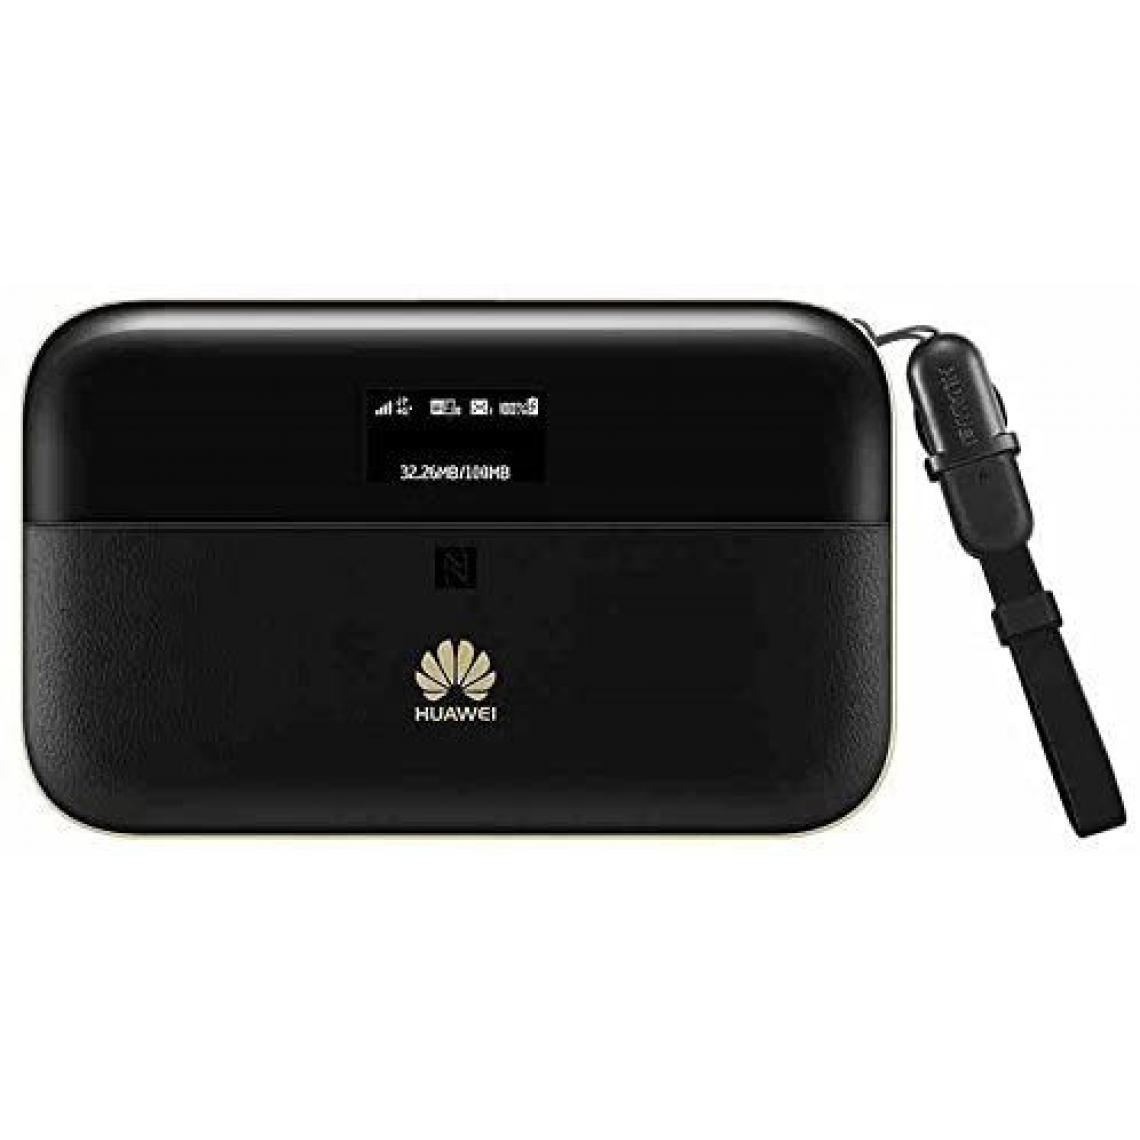 Chrono - Huawei WiFi 2 Pro e5885ls-93a E5885 300Mbps 4 G LTE WiFi Hotspot mobile (noir) - Modem / Routeur / Points d'accès